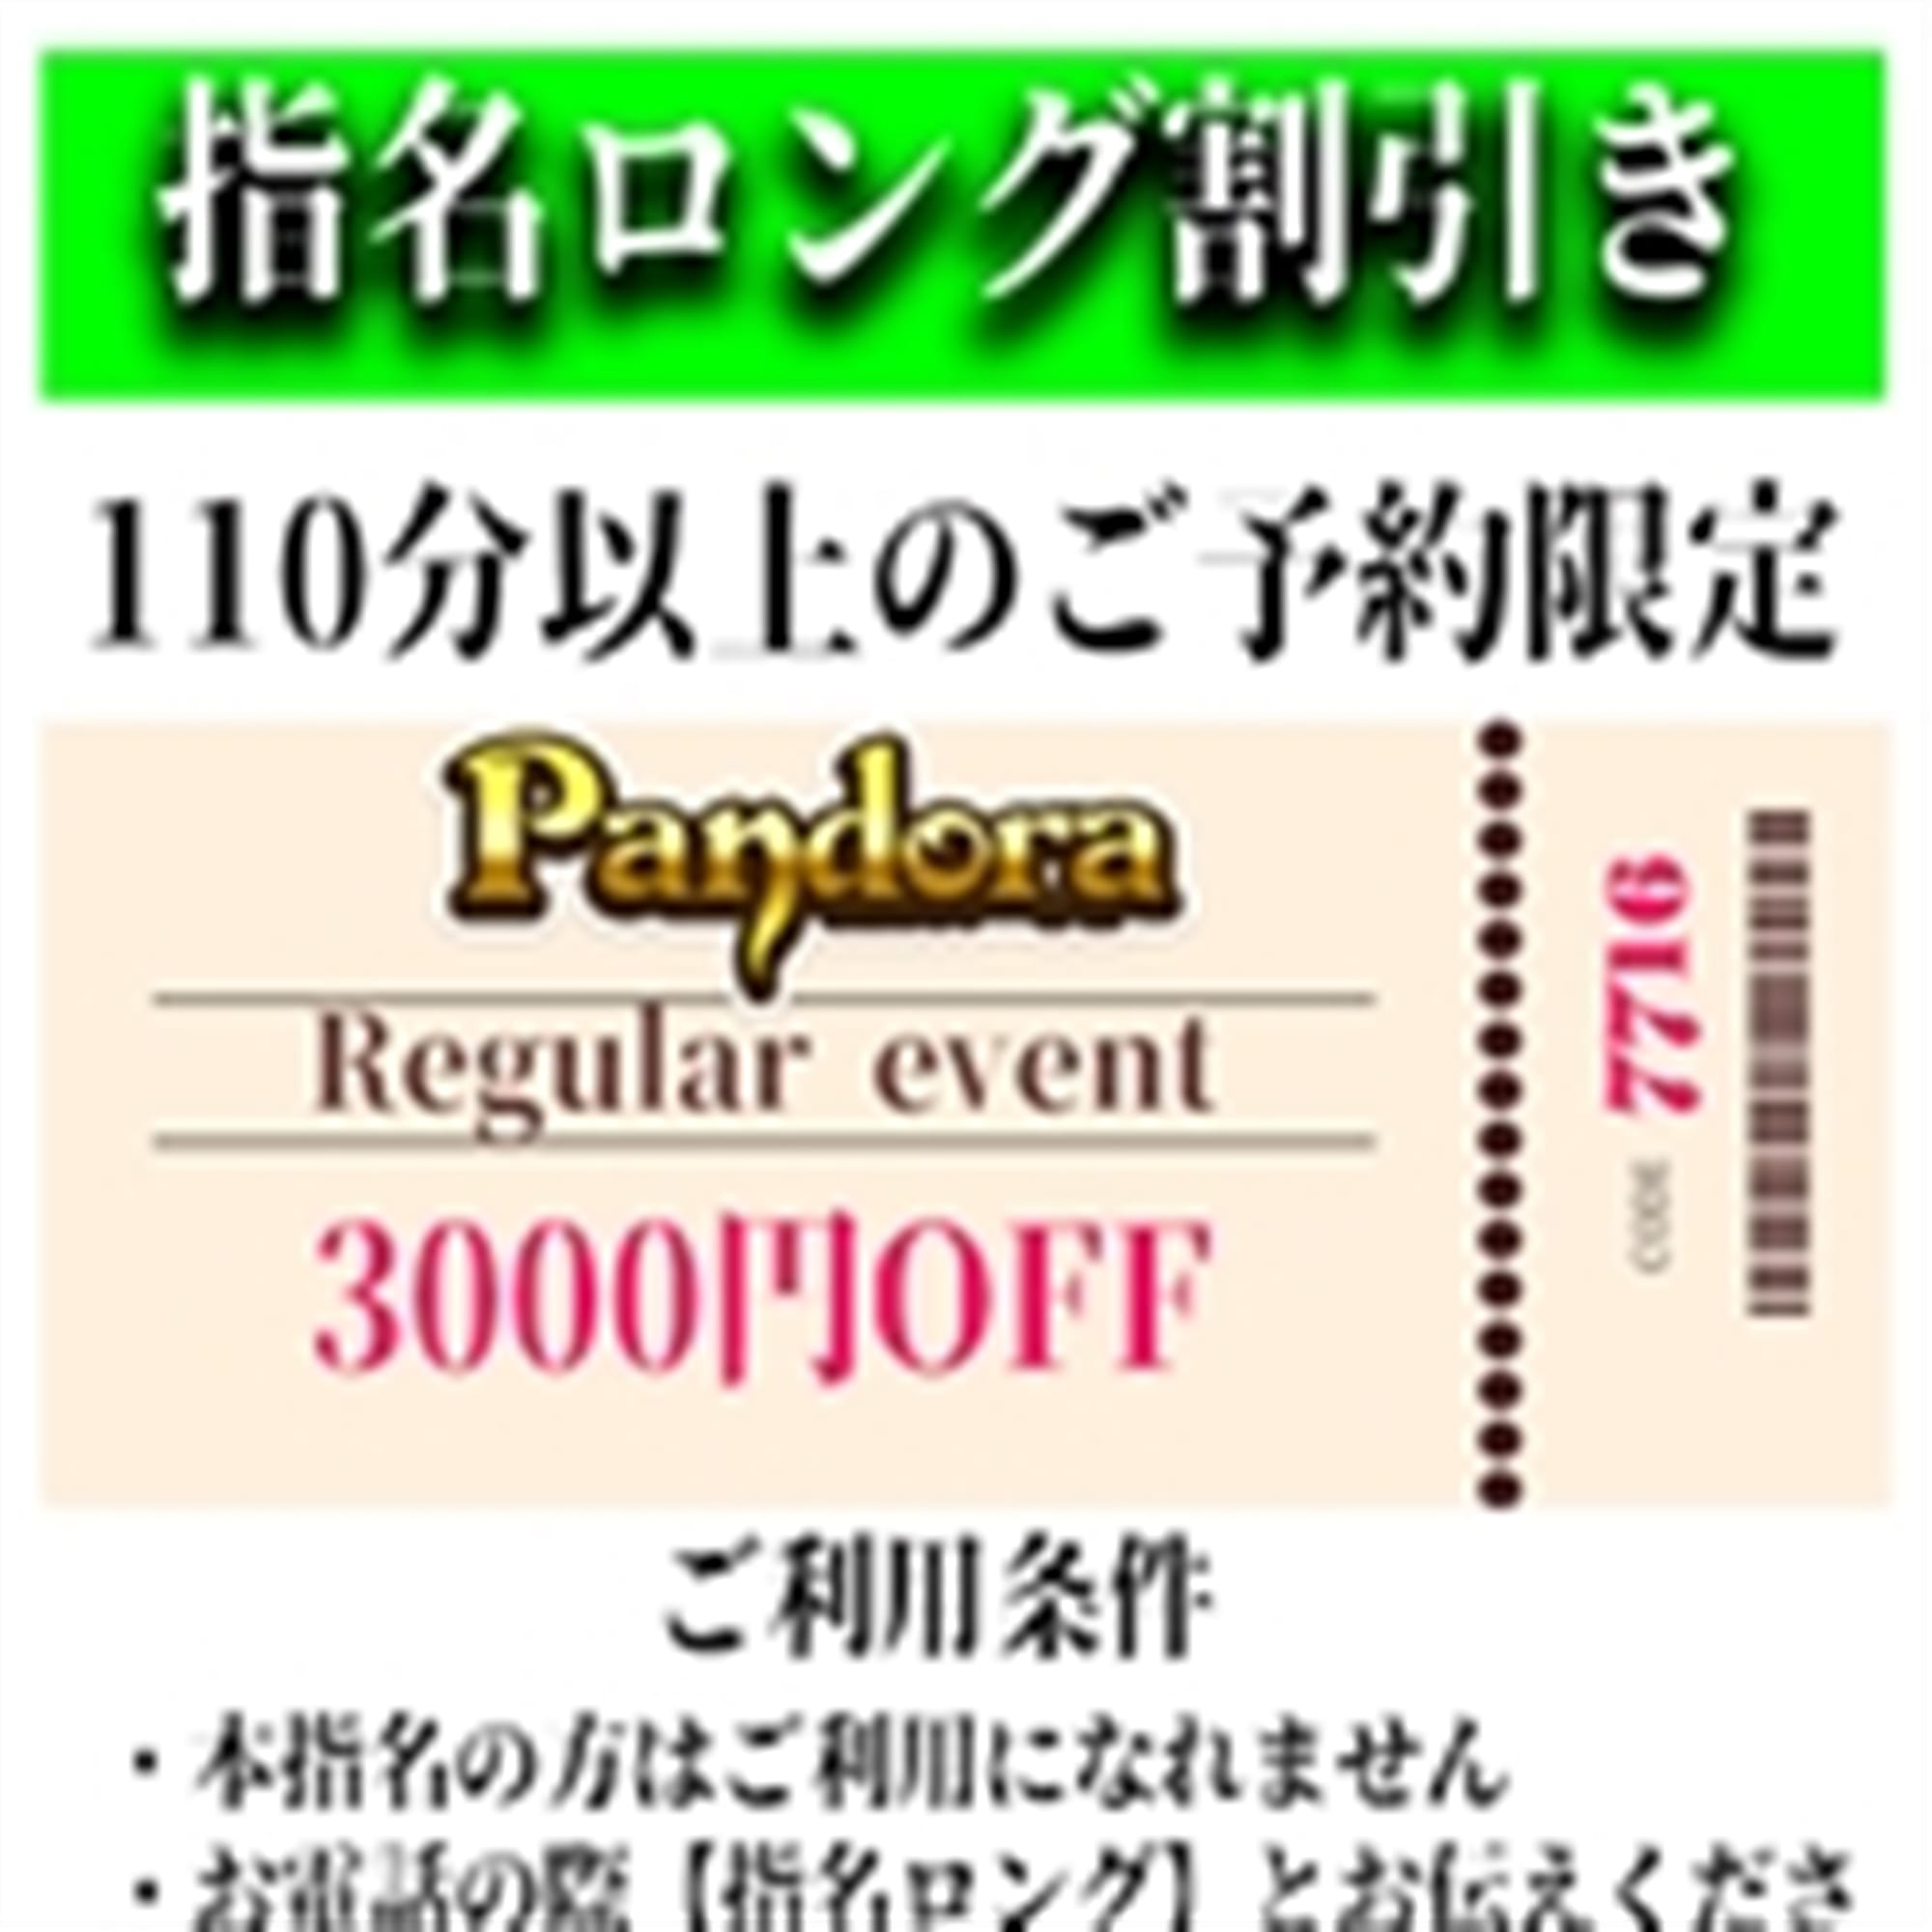 「ご指名のお客様も遊べるロングコース割引」04/26(金) 18:25 | Pandora(パンドラ)新潟のお得なニュース